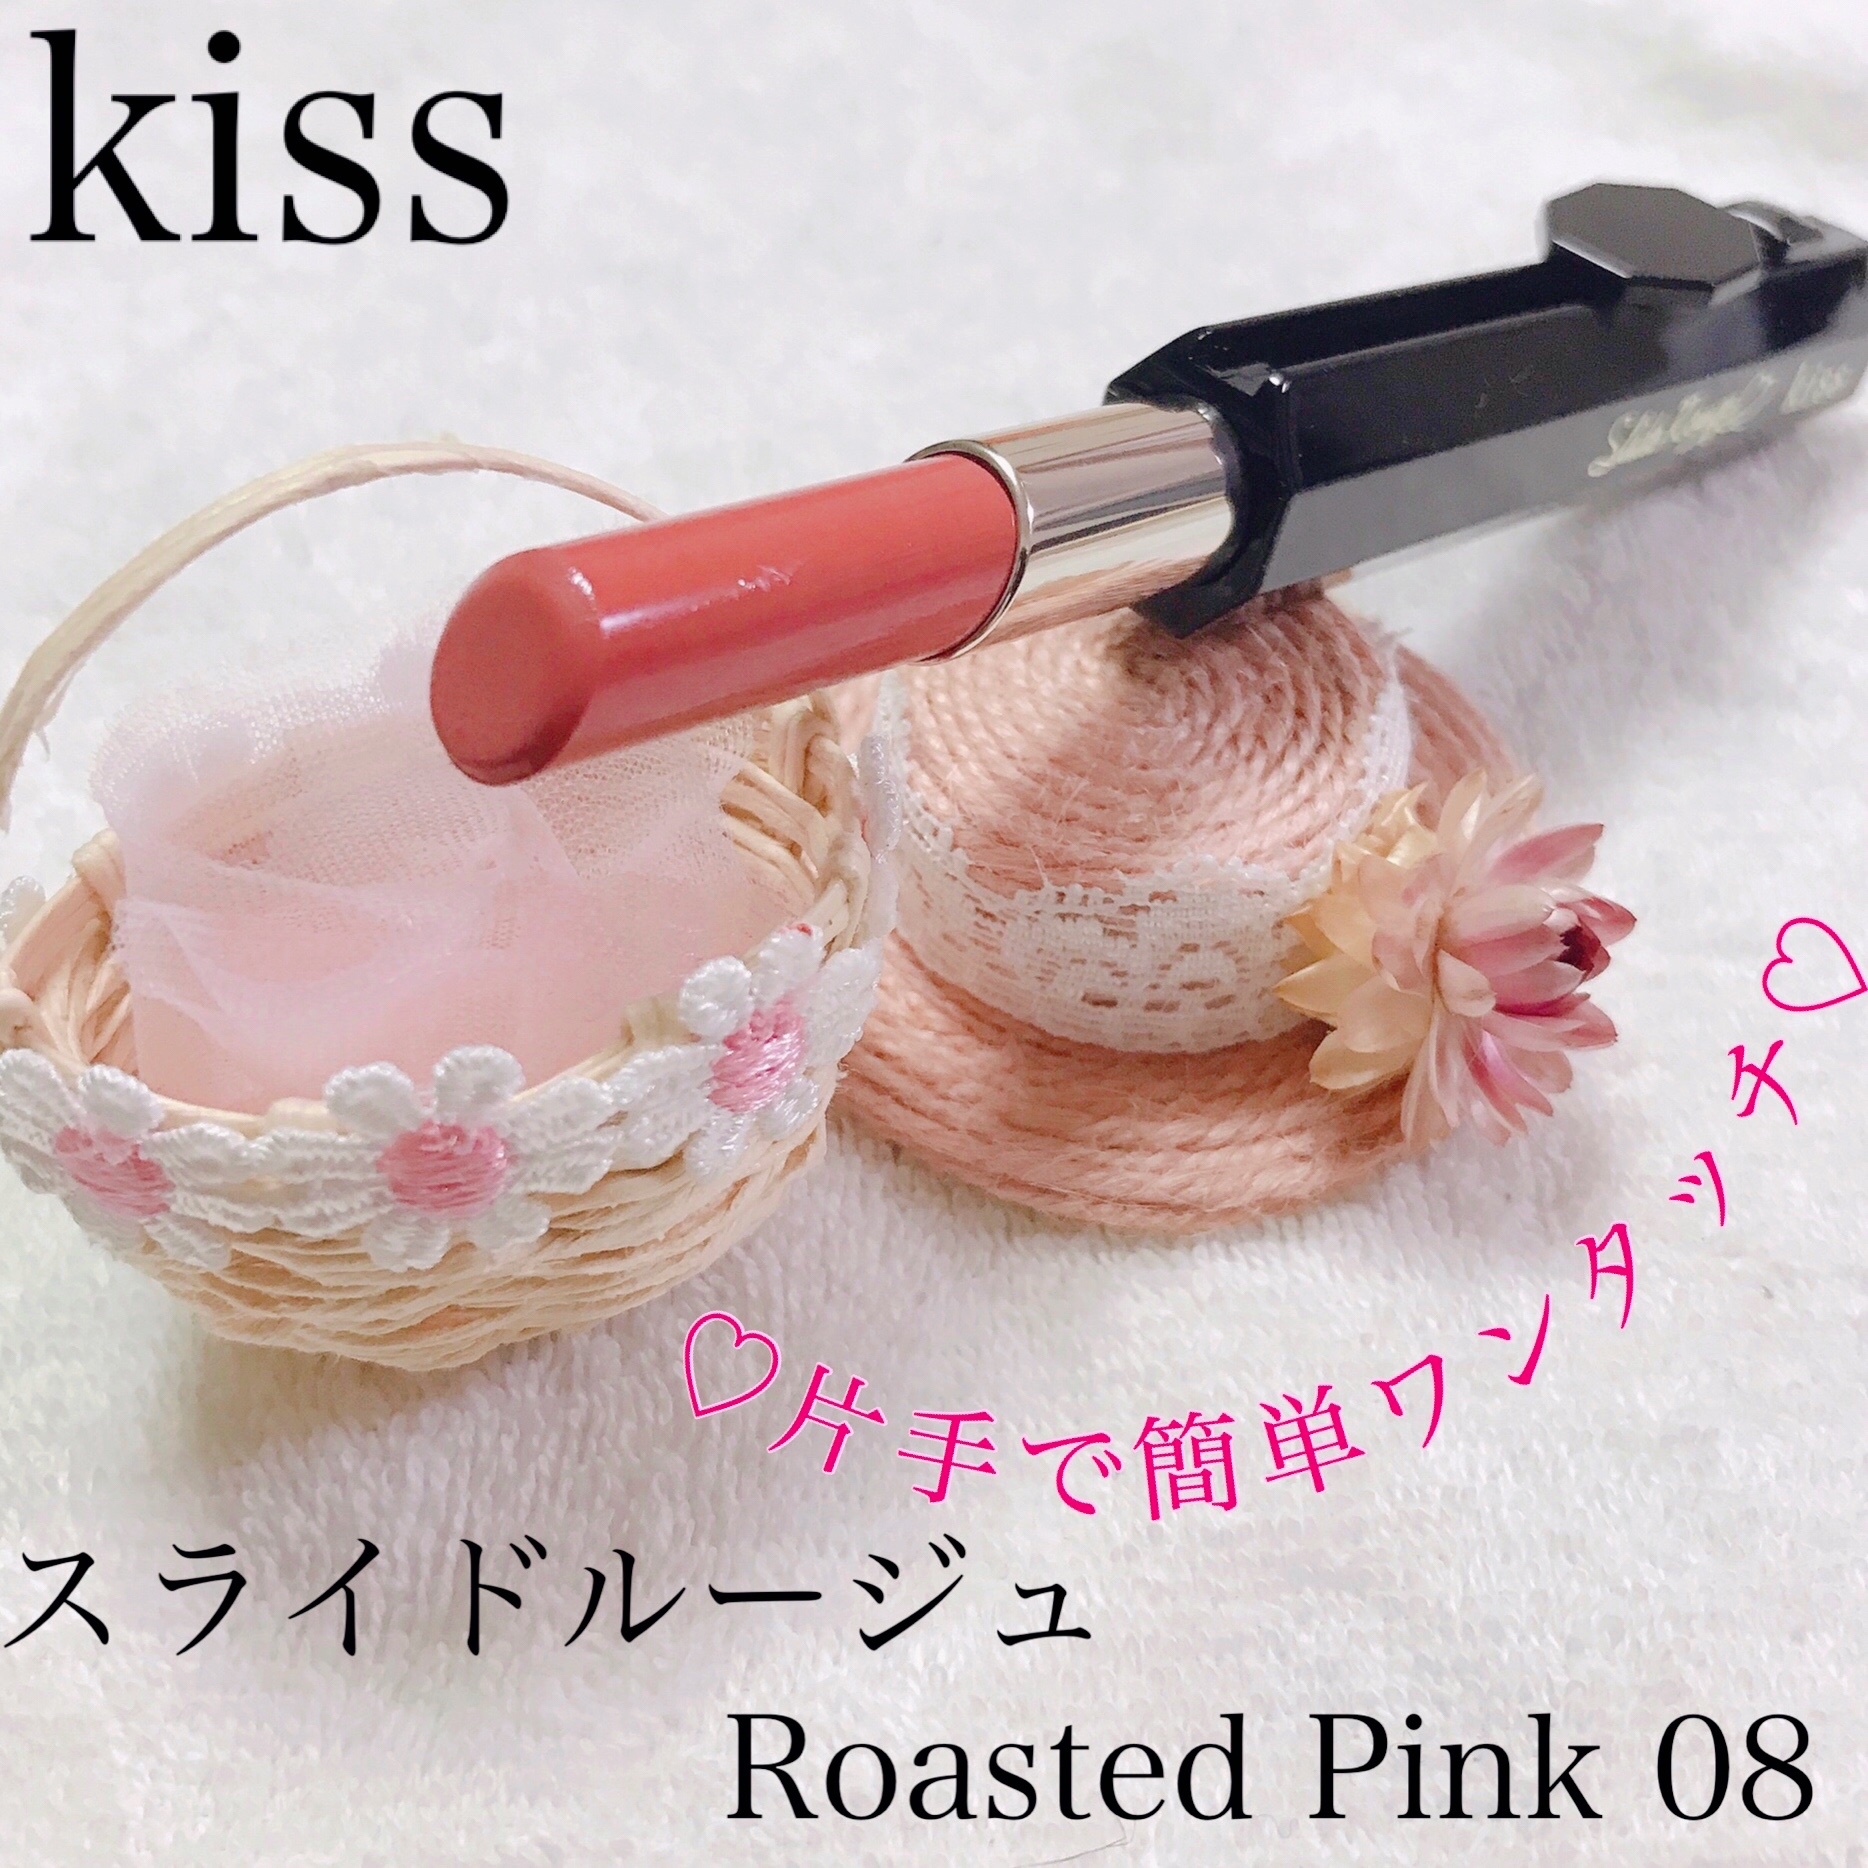 キス / スライドルージュ 08=Roasted Pinkの公式商品情報｜美容